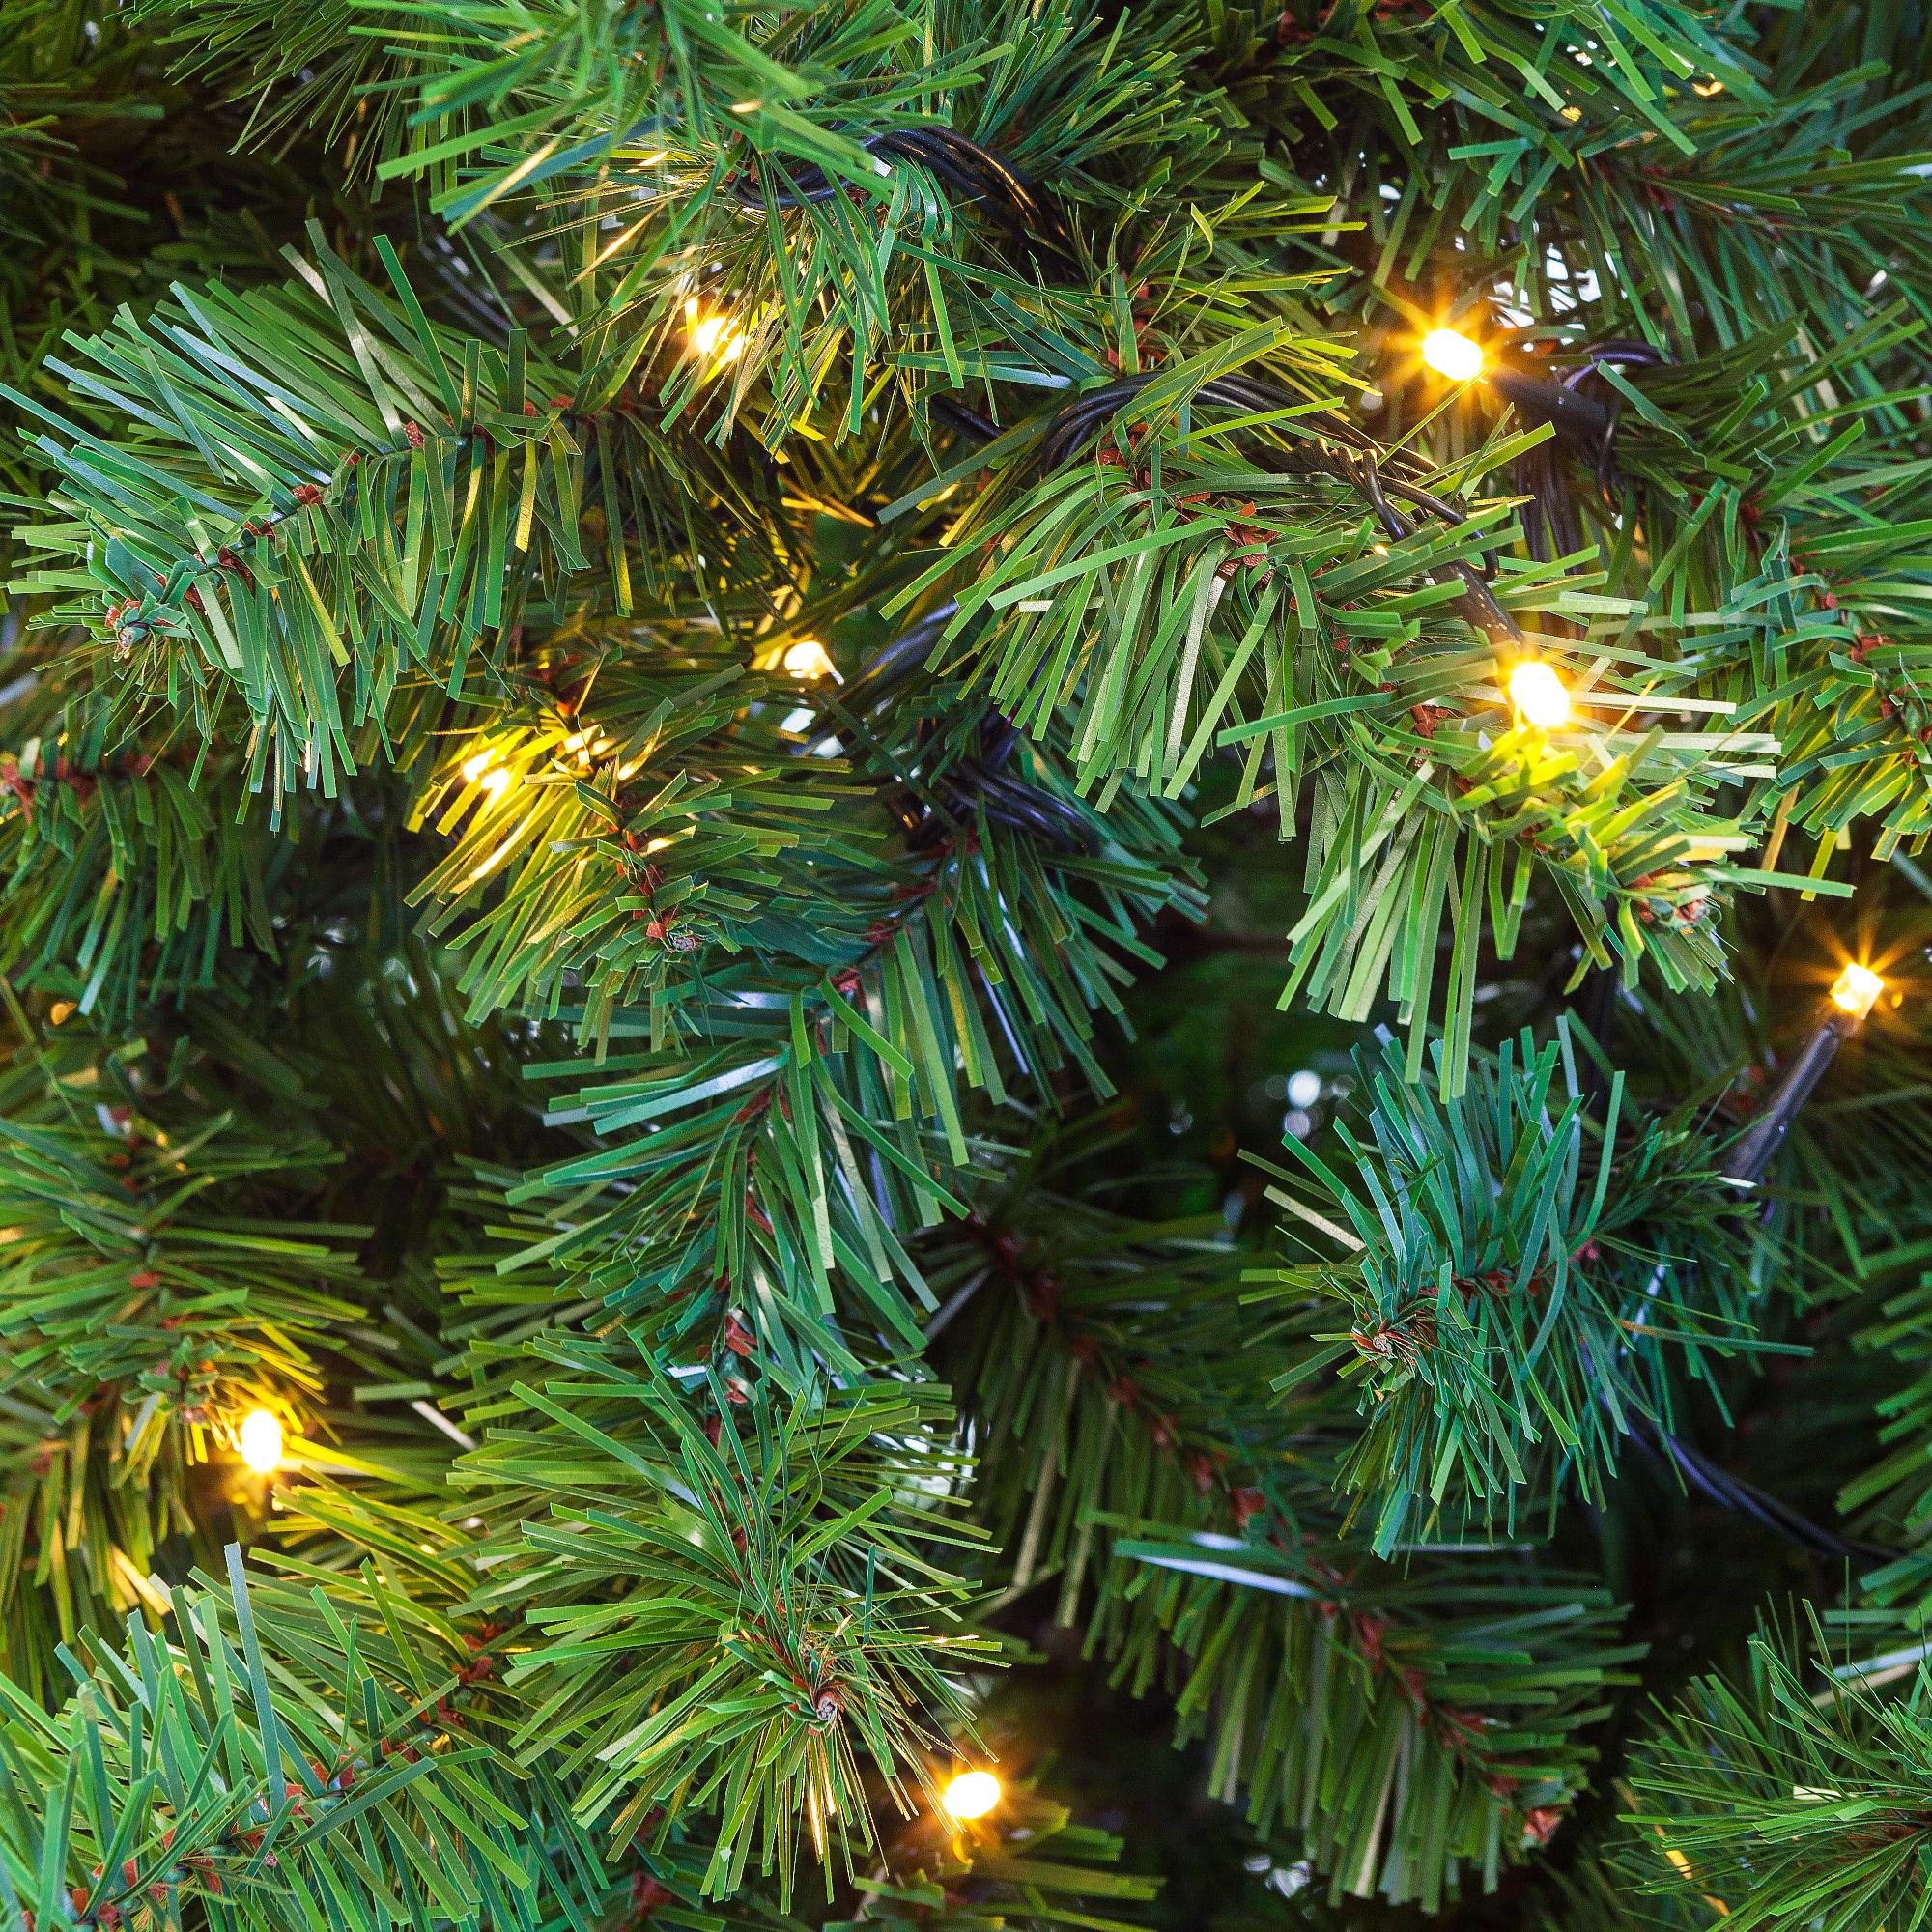 Kerstboom Excellent Trees® LED Stavanger Green 180 cm met verlichting - nu met Gratis Opbergtas t.w.v. € 27.95